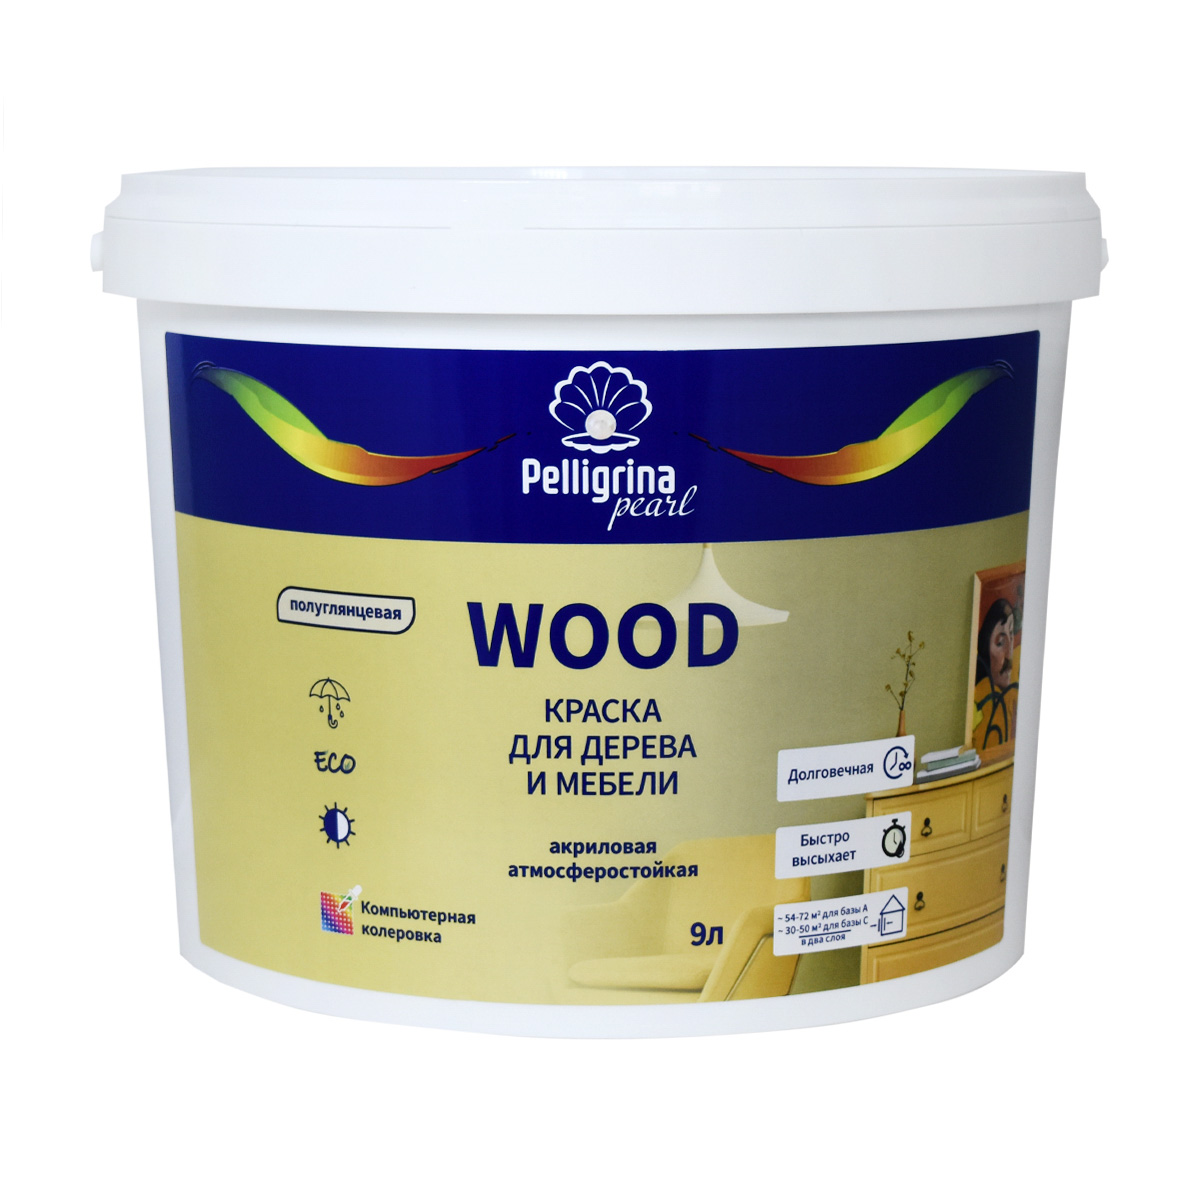 Краска для дерева и мебели Pelligrina Pearl Wood, акриловая, база С, бесцветная, 9 л усиленная смывка для краски с дерева telakka wood pro 5 кг